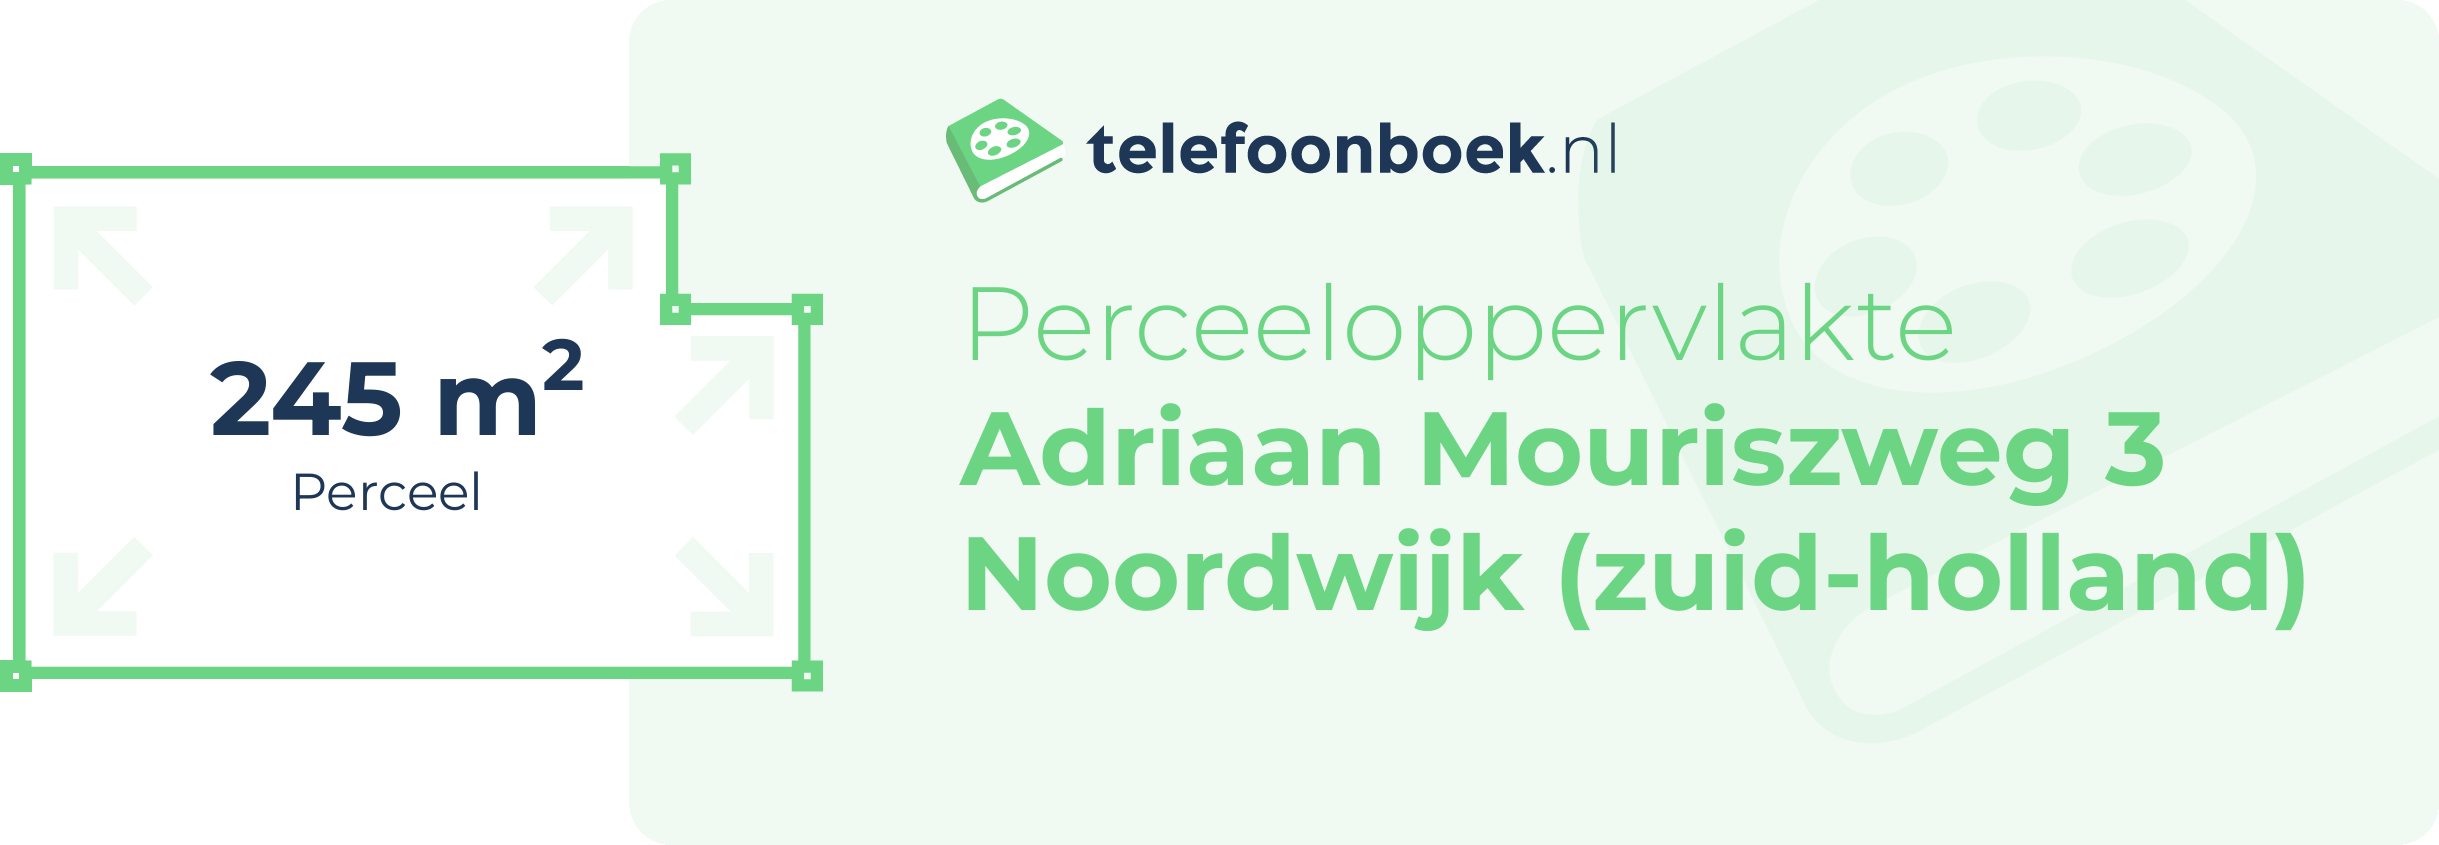 Perceeloppervlakte Adriaan Mouriszweg 3 Noordwijk (Zuid-Holland)